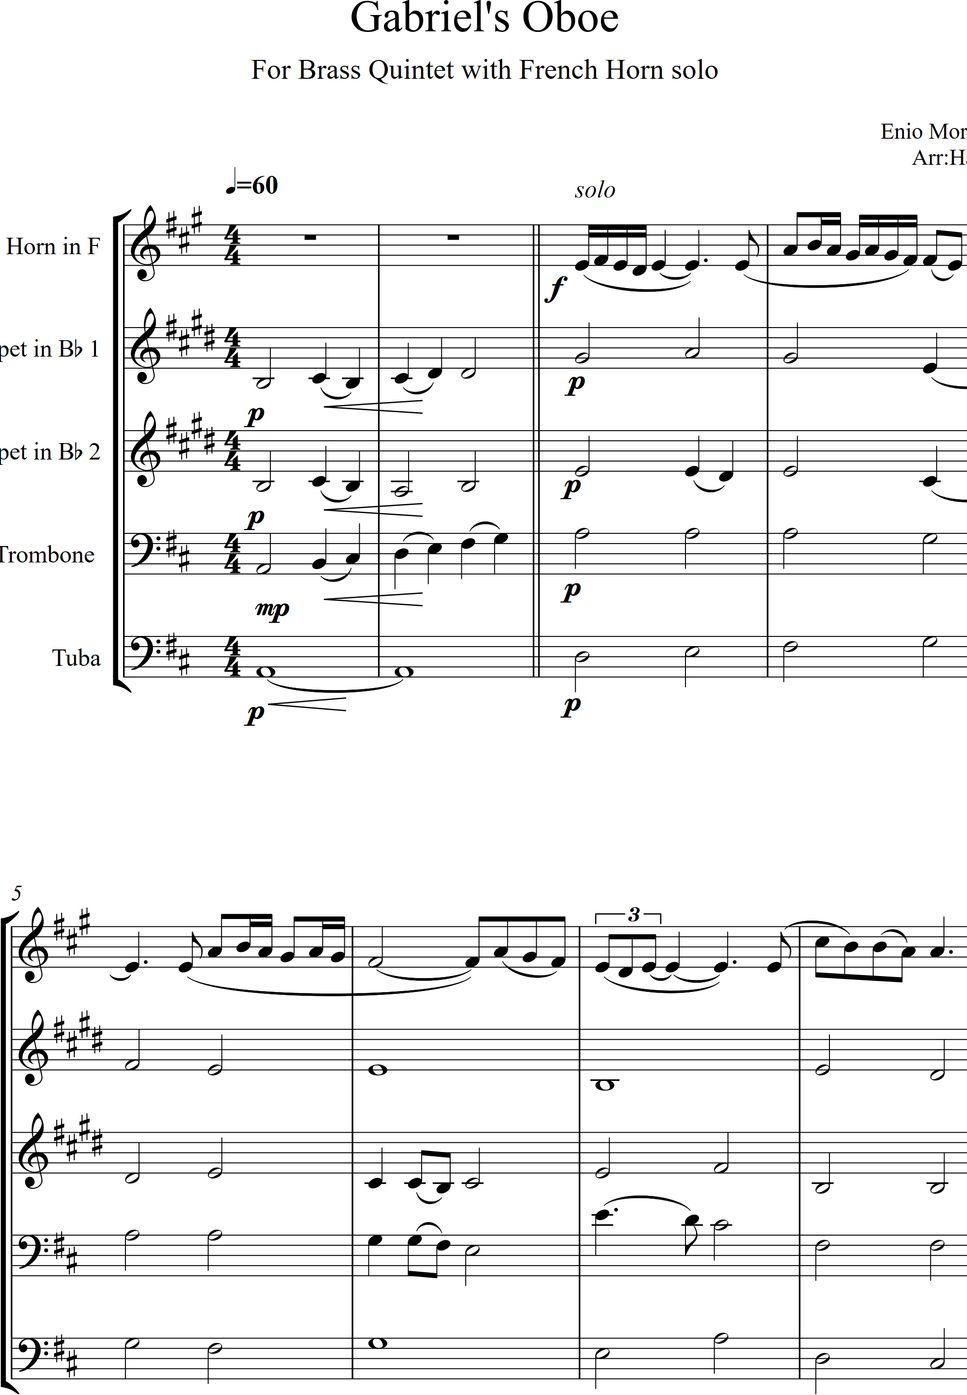 Enio Morricone - Gabriel's Oboe by Hai Mai